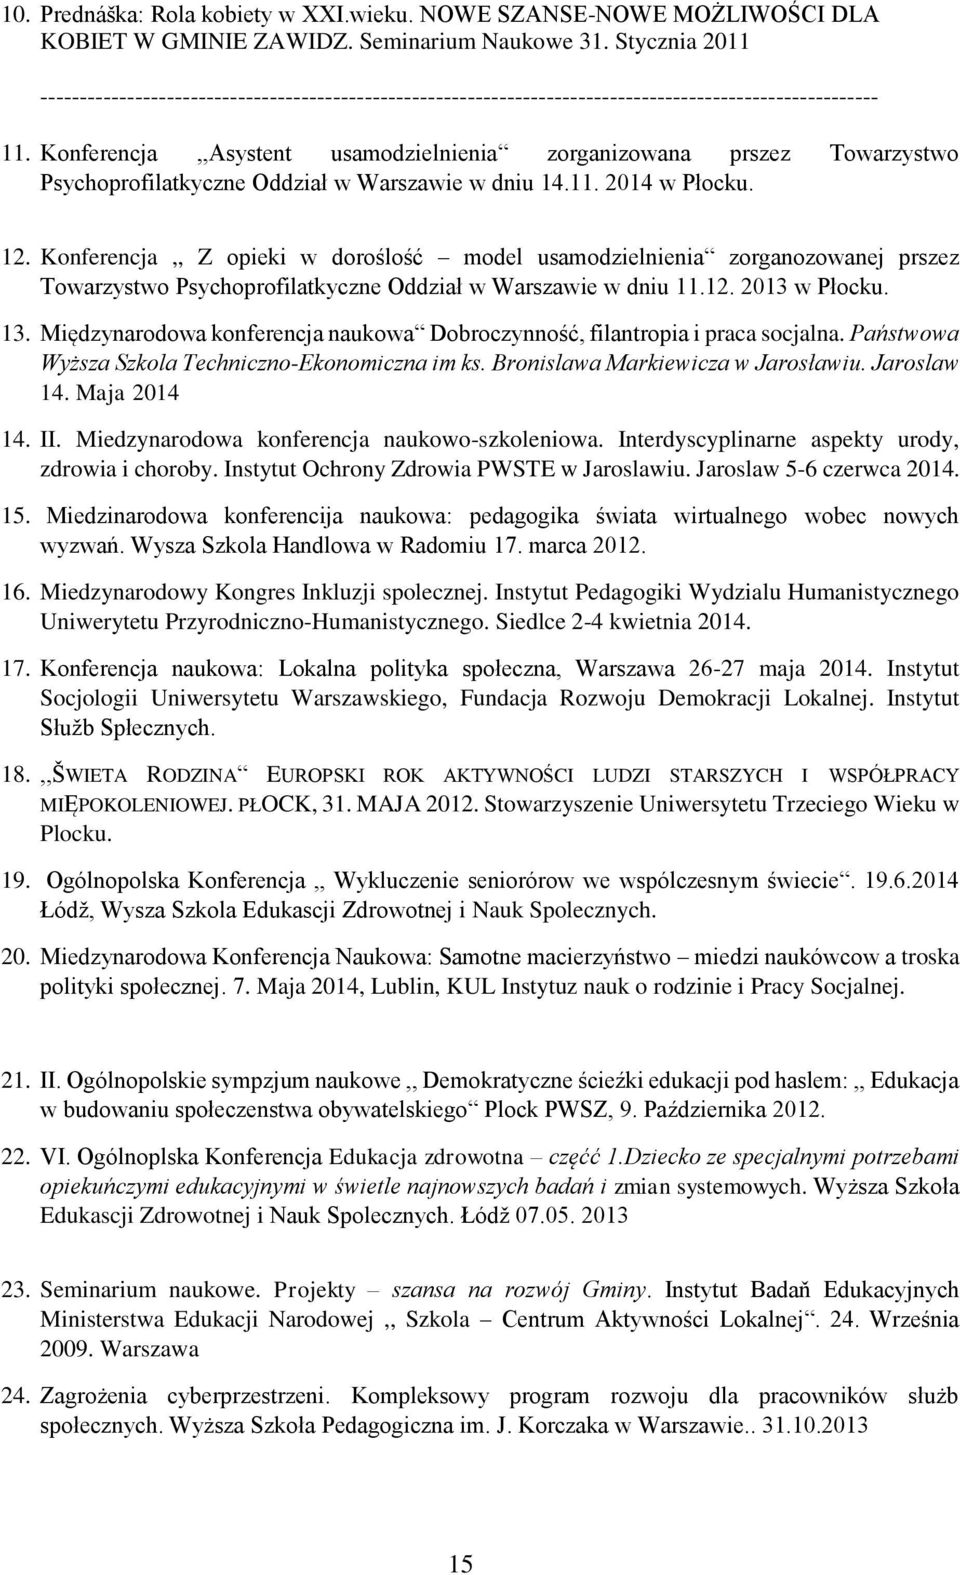 Konferencja,,Asystent usamodzielnienia zorganizowana prszez Towarzystwo Psychoprofilatkyczne Oddział w Warszawie w dniu 14.11. 2014 w Płocku. 12.